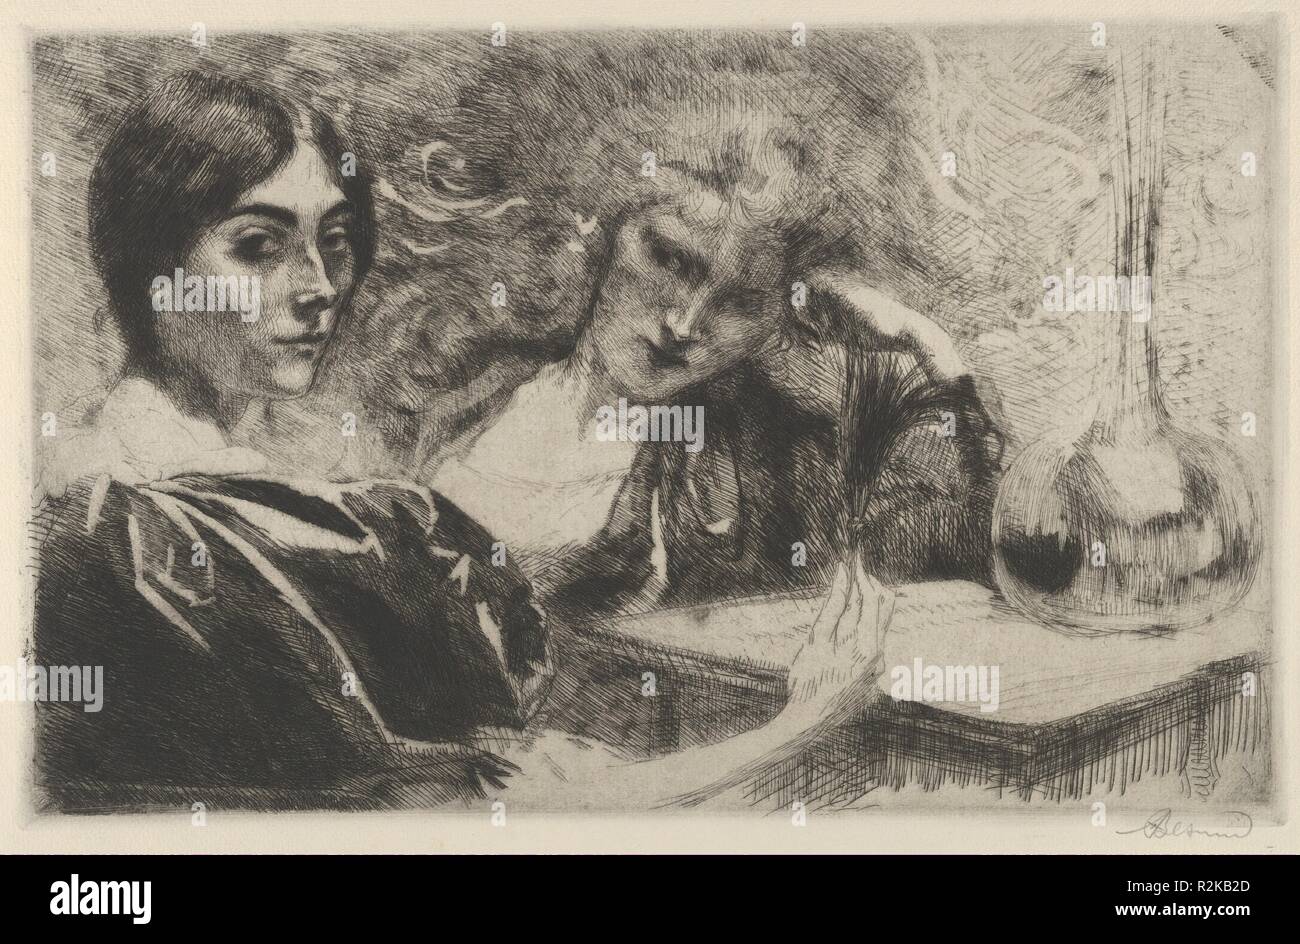 Morphin Süchtige. Artist: paul-albert Besnard (Französisch, Paris 1849-1934 Paris). Abmessungen: Bild: 9 5/16 x 14 9/16 in. (23,7 × 37 cm). Datum: 1887. Paul-Albert Besnard (1849-1934) war ein Schüler des akademischen Malers Alexandre Cabanel (1823-1889), gewann den Prix de Rome 1874 und gehörte zu den Gründern der Société Nationale im Jahre 1890. Während seiner Karriere seinen Stil in zwischen akademischen und impressionistische geblieben. Während der letzten 30 Jahre seines Lebens hat er wichtige Positionen in der Académie de France in Rom, der Ecole des Beaux-Arts, die Académie Française, die Académie de Saint Luc gehalten Stockfoto